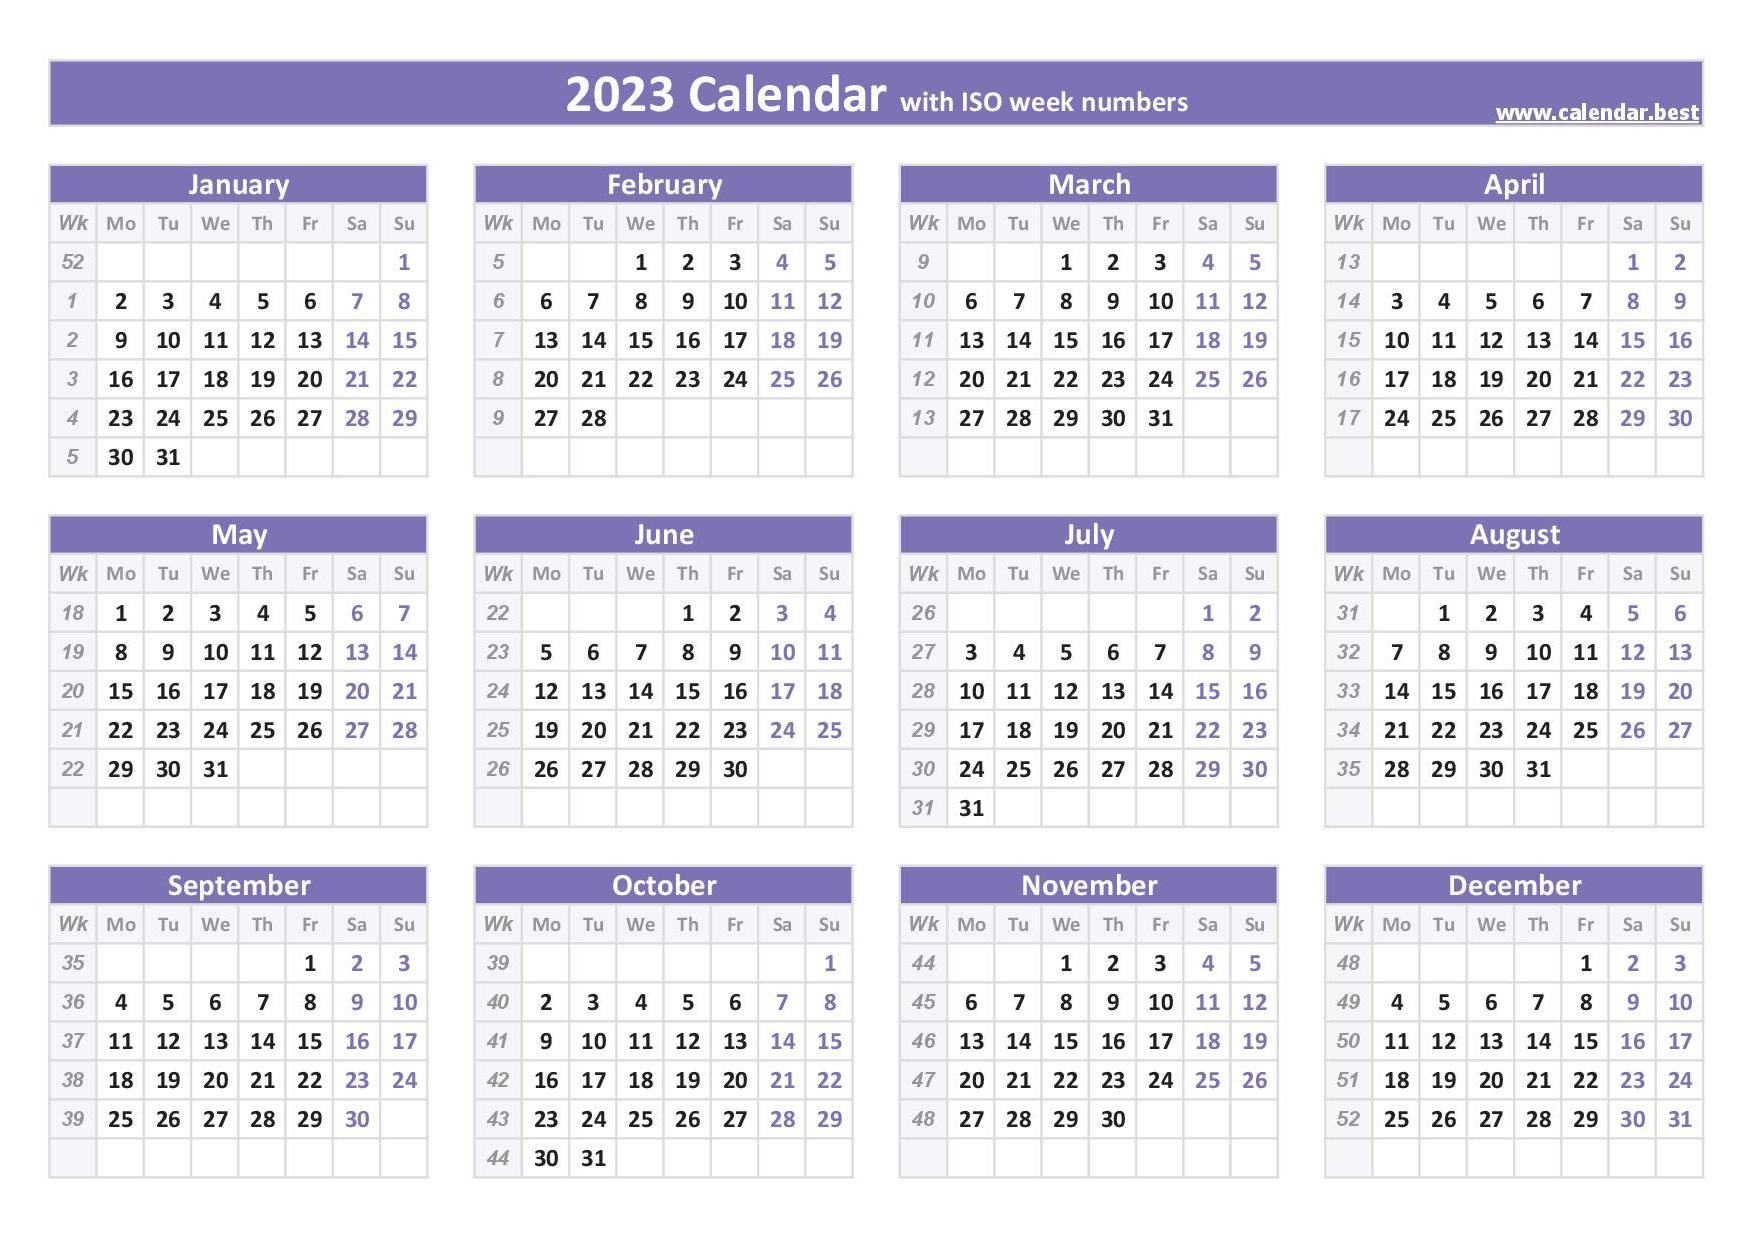 2023 calendar with week numbers (US and ISO week numbers)